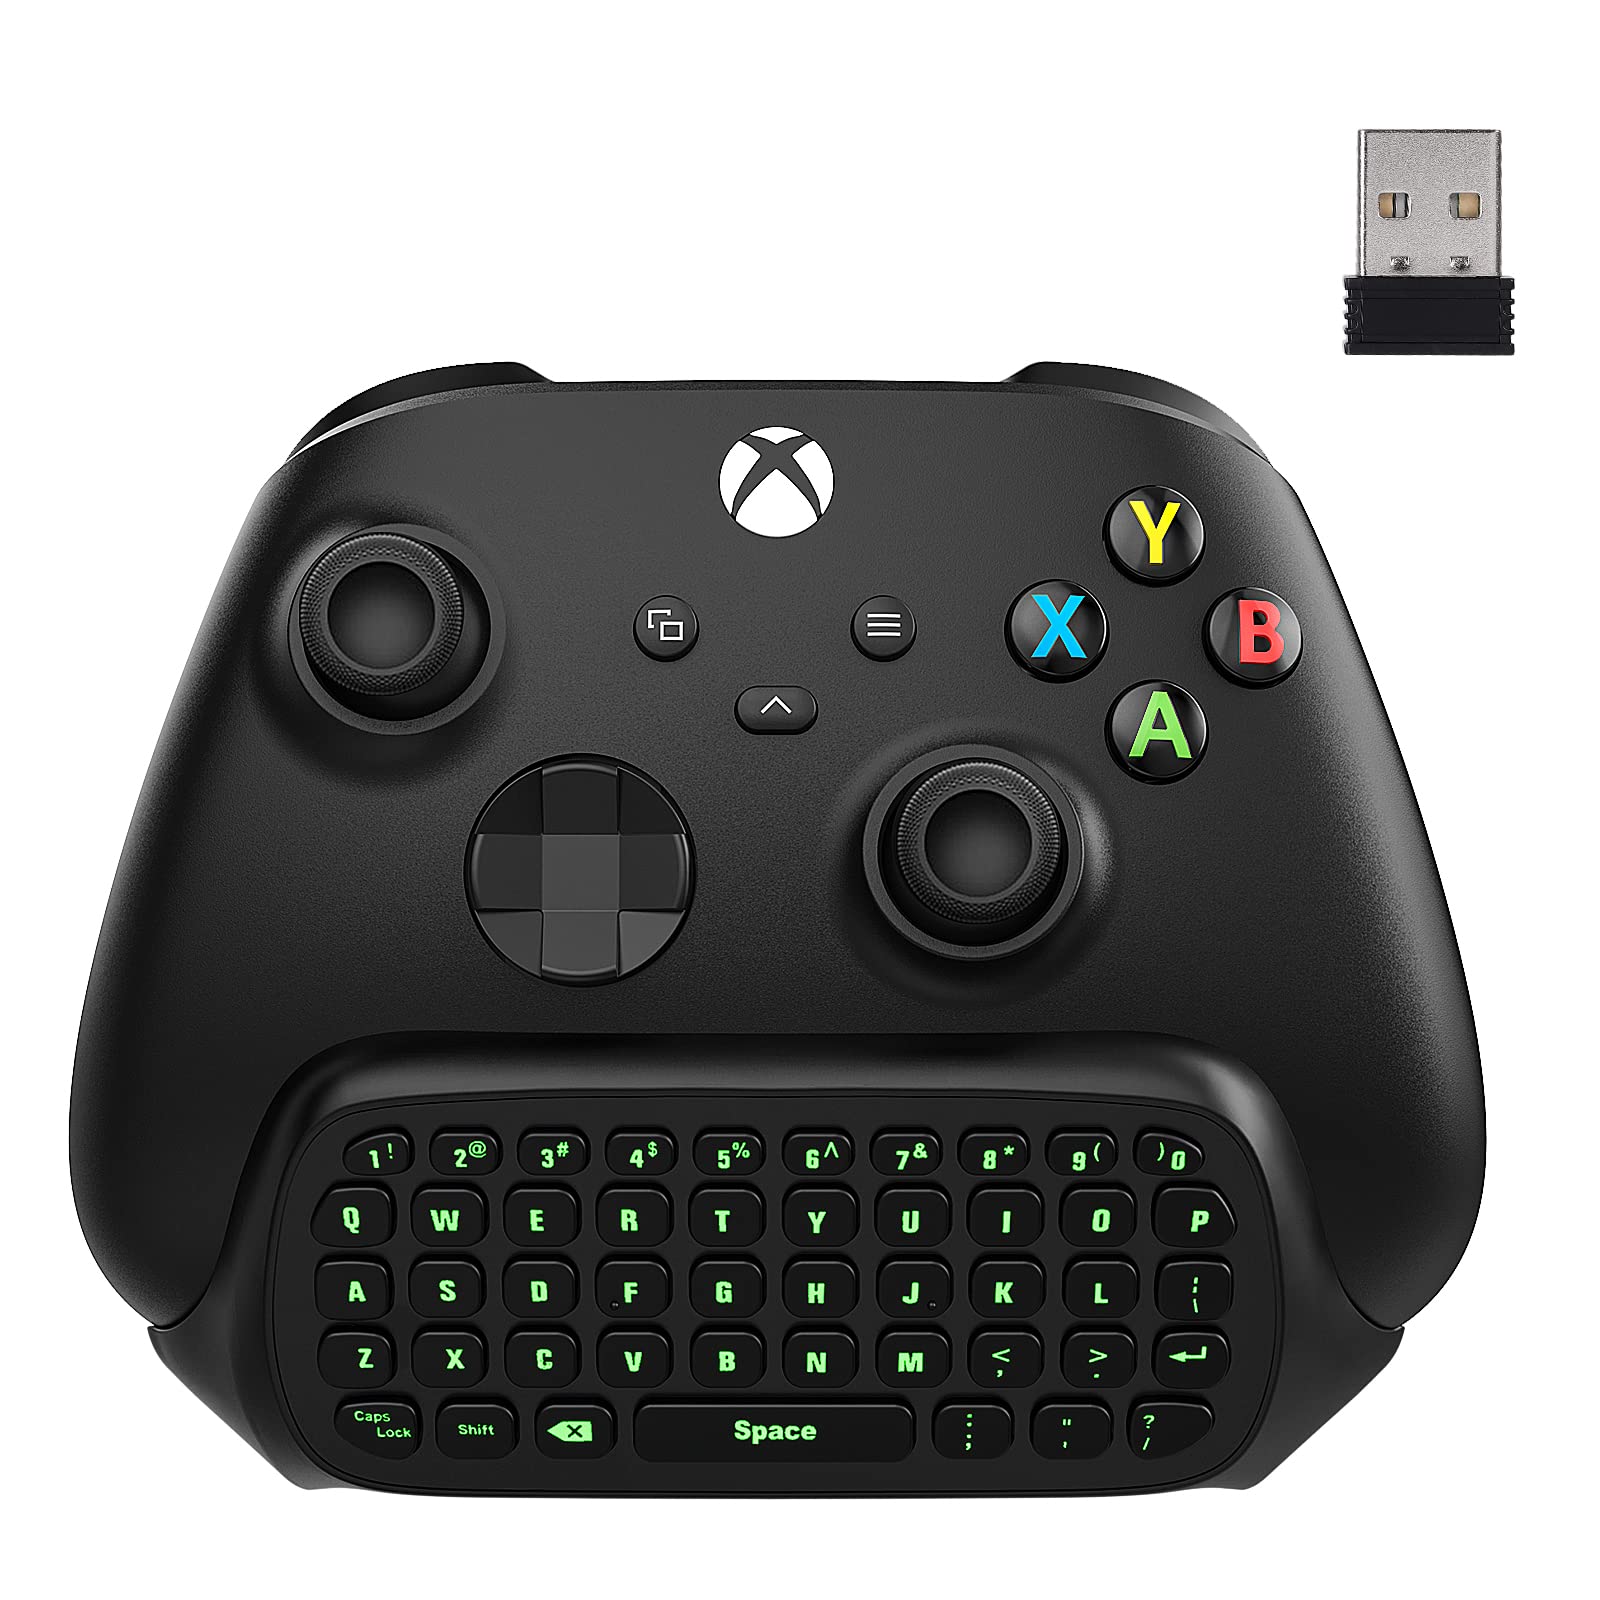 Xbox Serie X/S コントローラー用キーボード ATiC Xbox One/Xbox One S/Xbox one elite コントローラー用 ミニキーボード 24Ghzレシーバー付属 ワイヤレス チャットパッド 47キー ミュート&マイク機能付き グリーンバックライト付き 装着簡単 Black